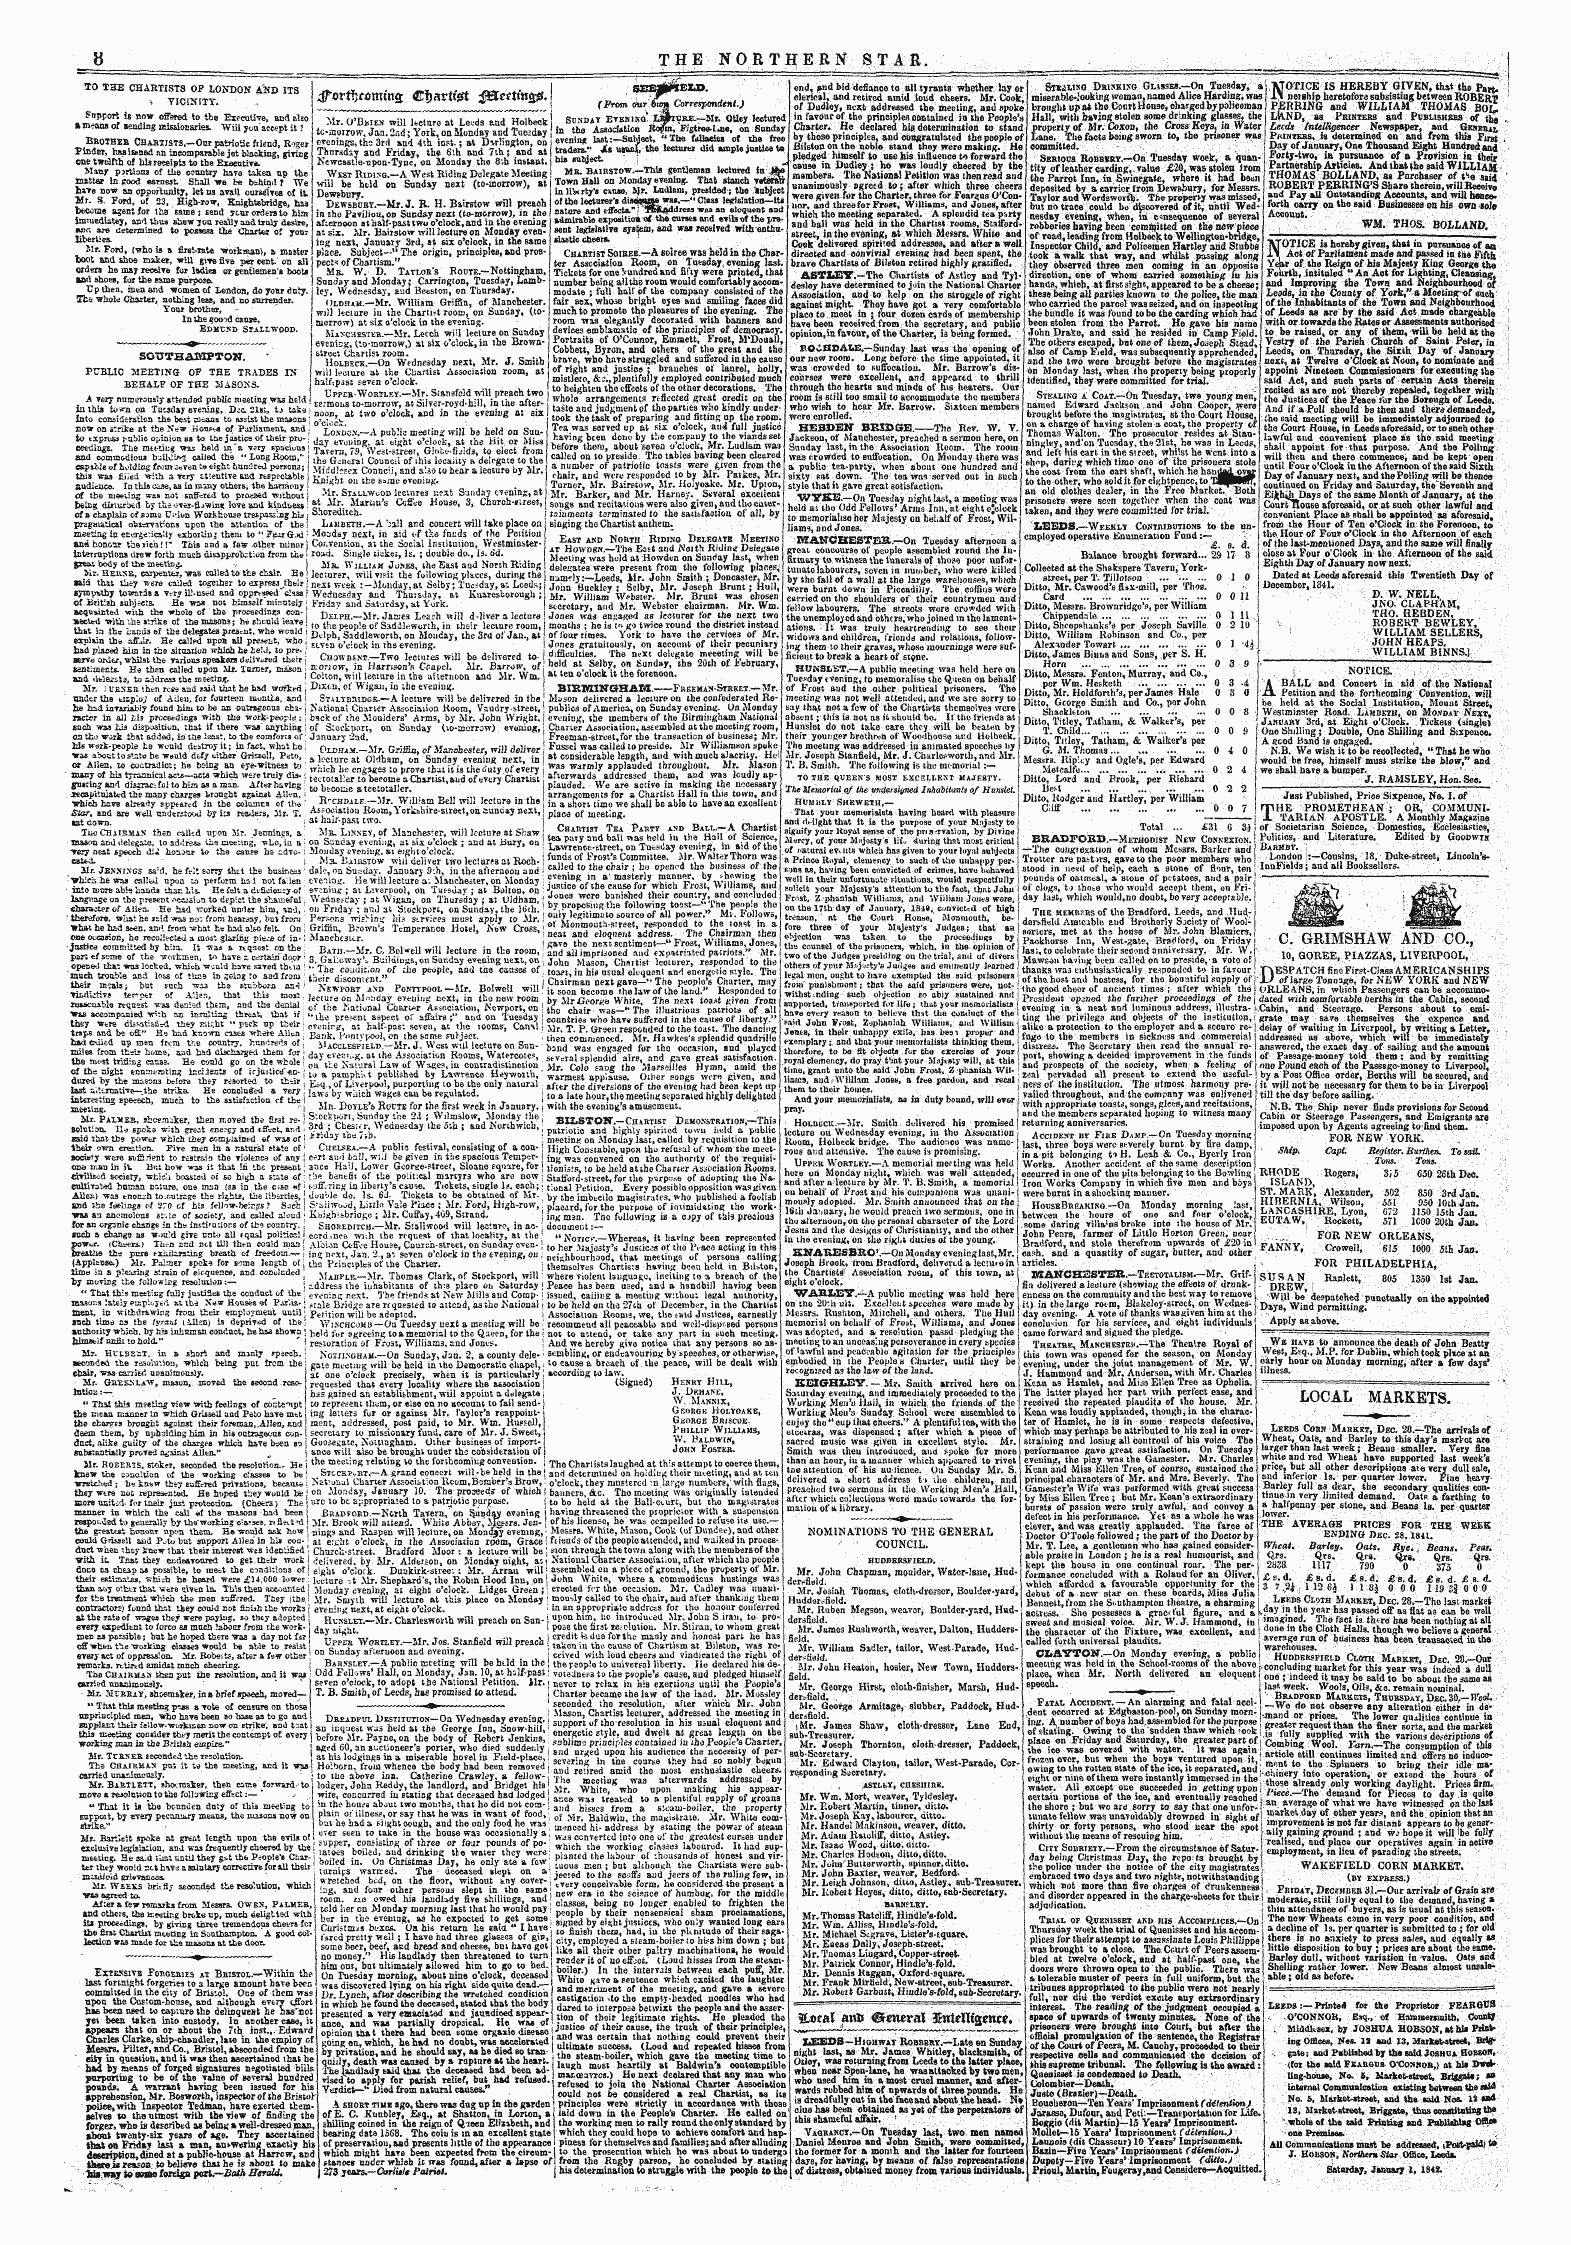 Northern Star (1837-1852): jS F Y, 2nd edition - 3fotff)Cqmin £ C|)Artt^T $&Ettto& F